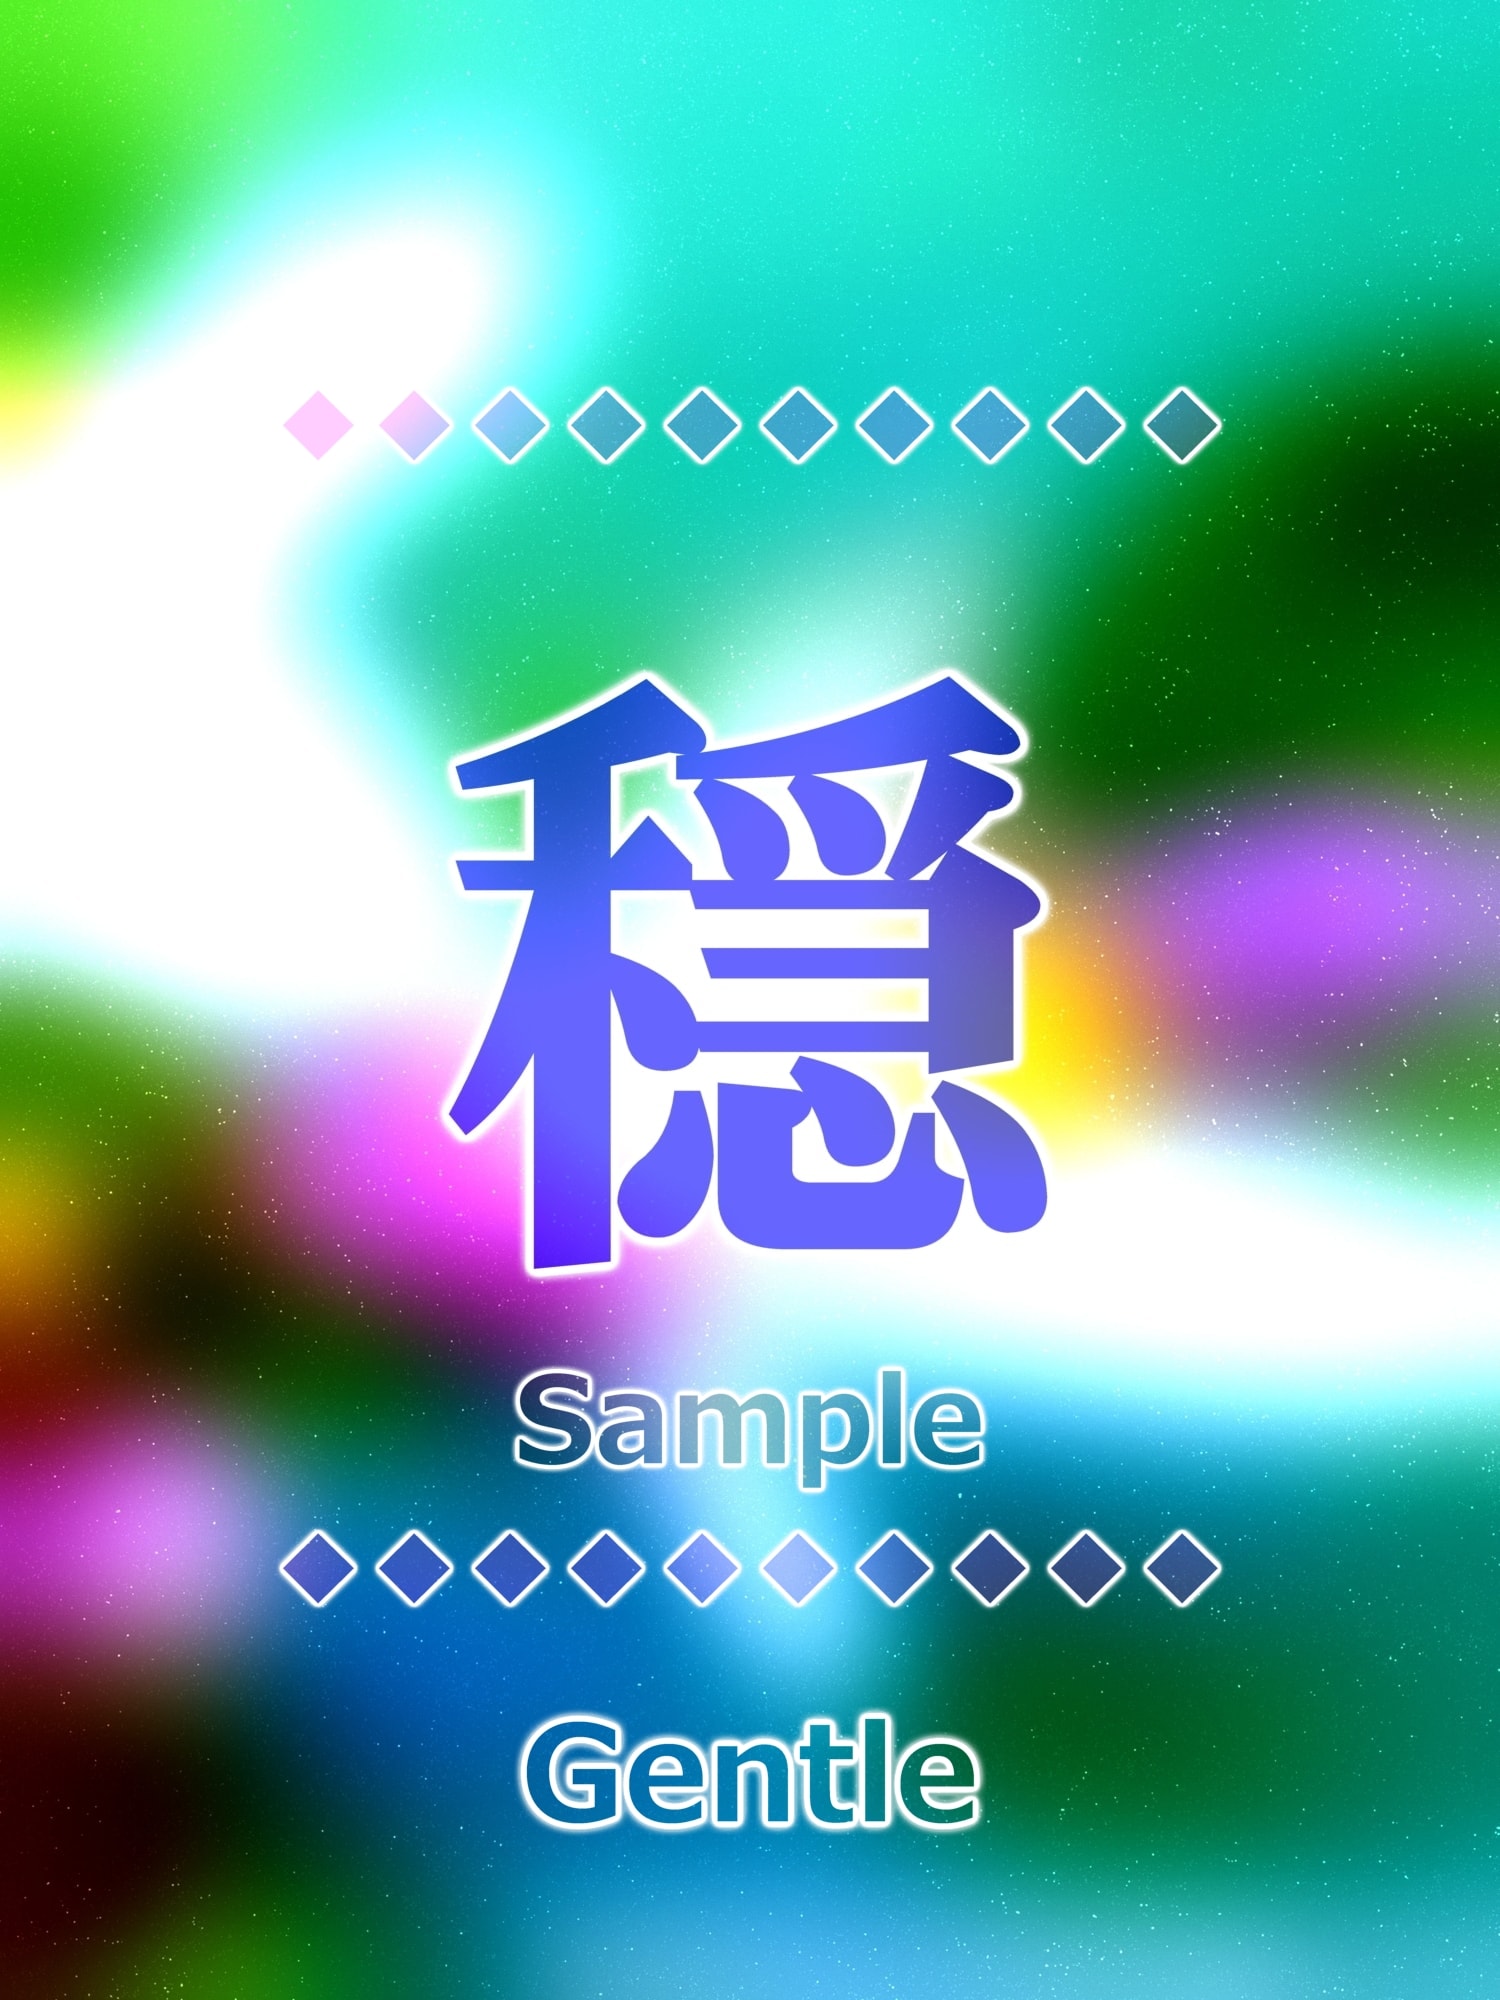 穏 gentle Kanji good luck charm amulet art glossy